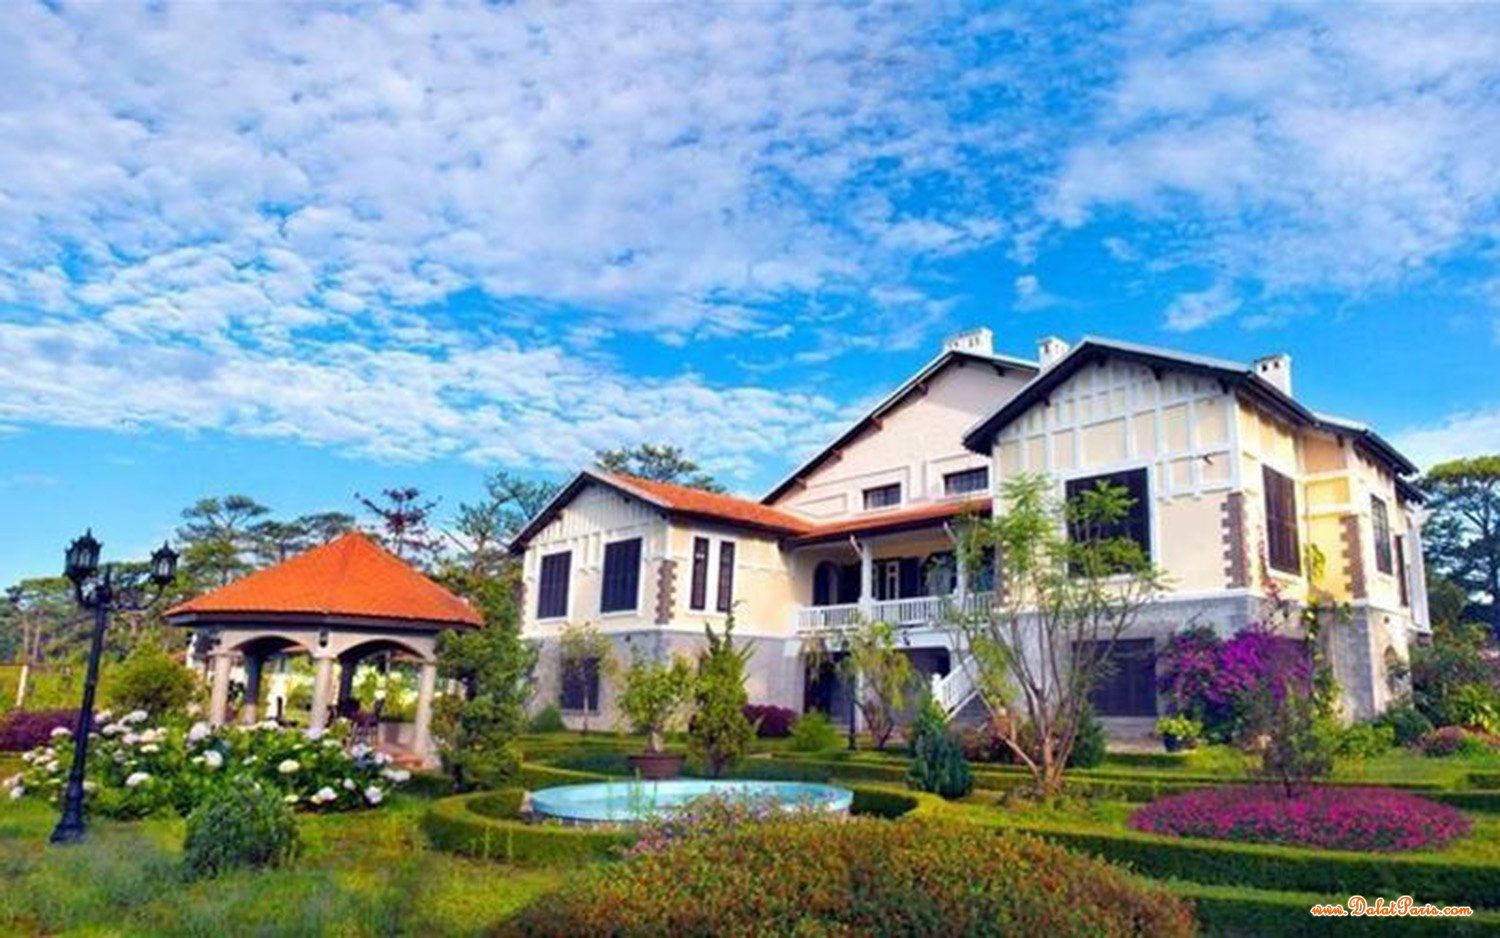 Đất xây khách sạn Biệt thự, DT 1024m2, khu vực trung tâm, đường Nguyễn Du, cách hồ Xuân Hương 2km,  thích hợp xây khách sạn biệt thự, giá 70 tỷ